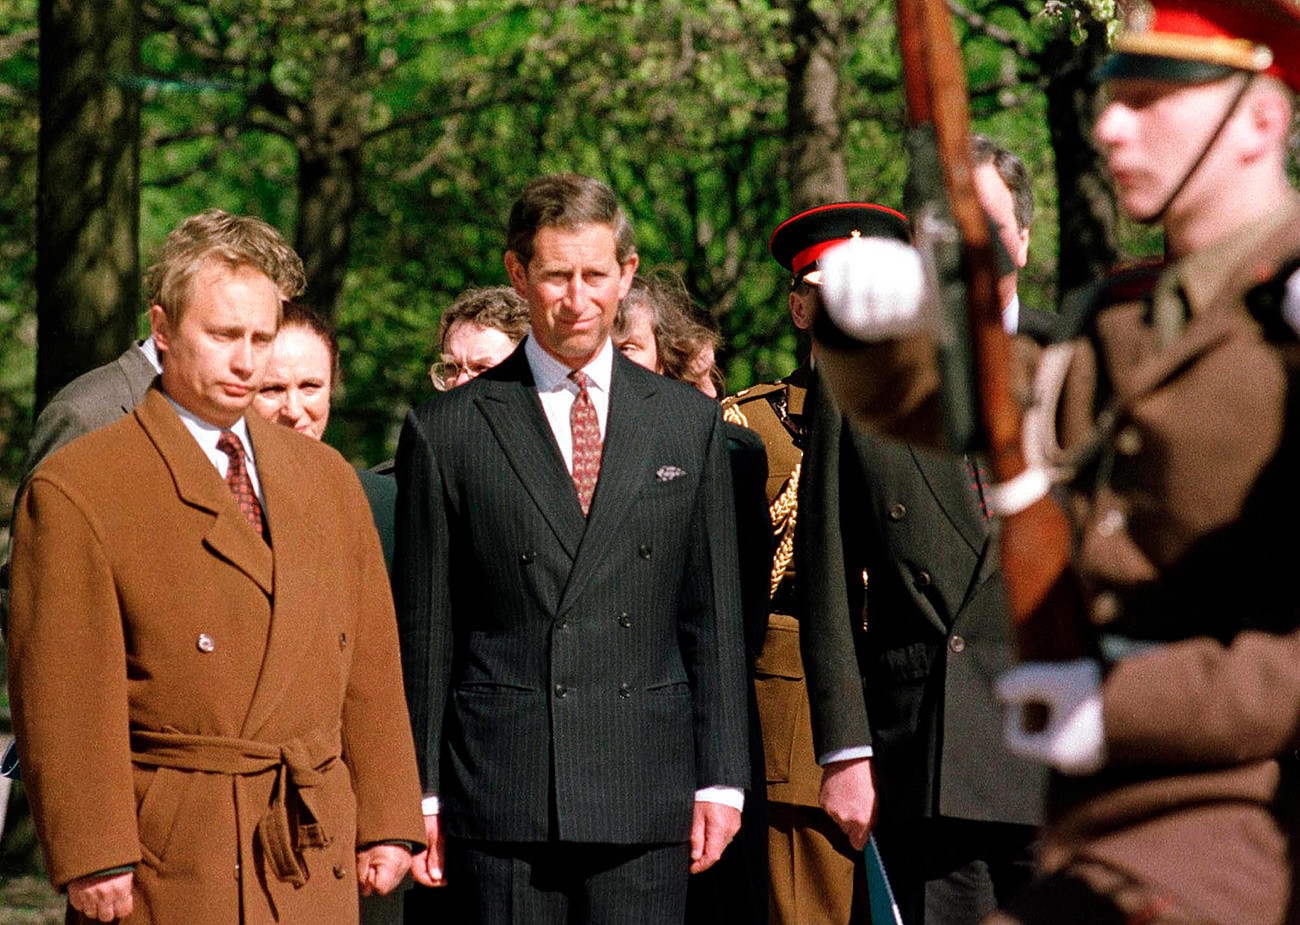 Vladimir Putin (lijevo), koji je tada bio zadužen za vanjske odnose Sankt-Peterburga kod gradonačelnika Anatolija Sopčaka, prisustvuje svečanosti polaganja vijenca s princom Charlesom na Piskarjovskom groblju u Sankt-Peterburgu. Fotografija je snimljena 17. svibnja 1994. godine.
